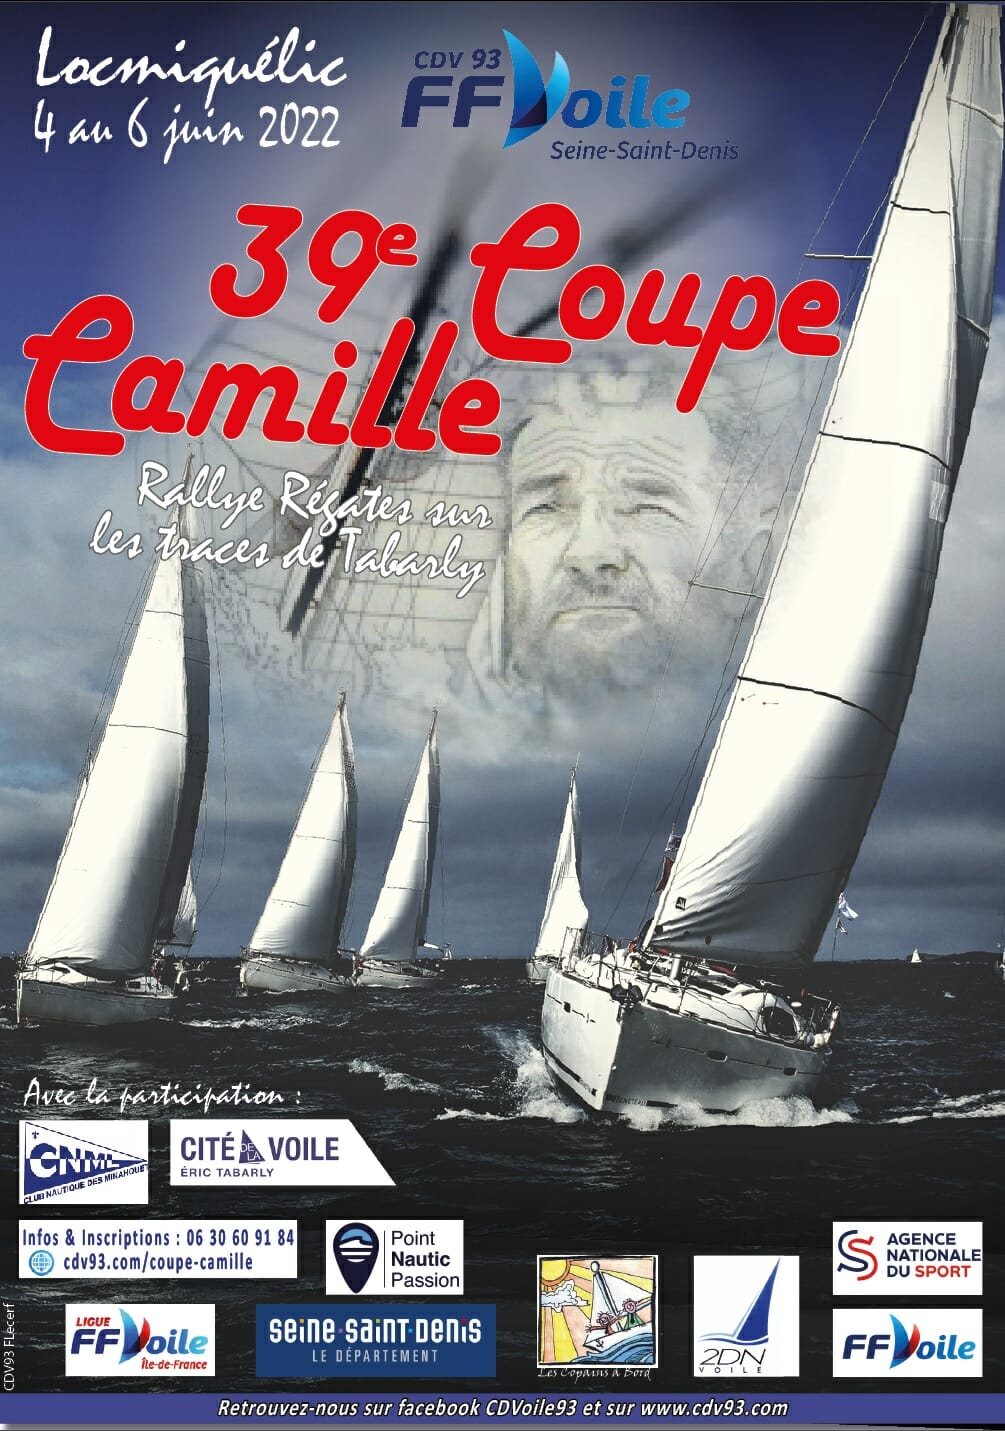 COUPE CAMILLE | Régate InterClubs Lorient proposée par 2DN/CDV93 | DU 4 AU 6 JUIN 2022